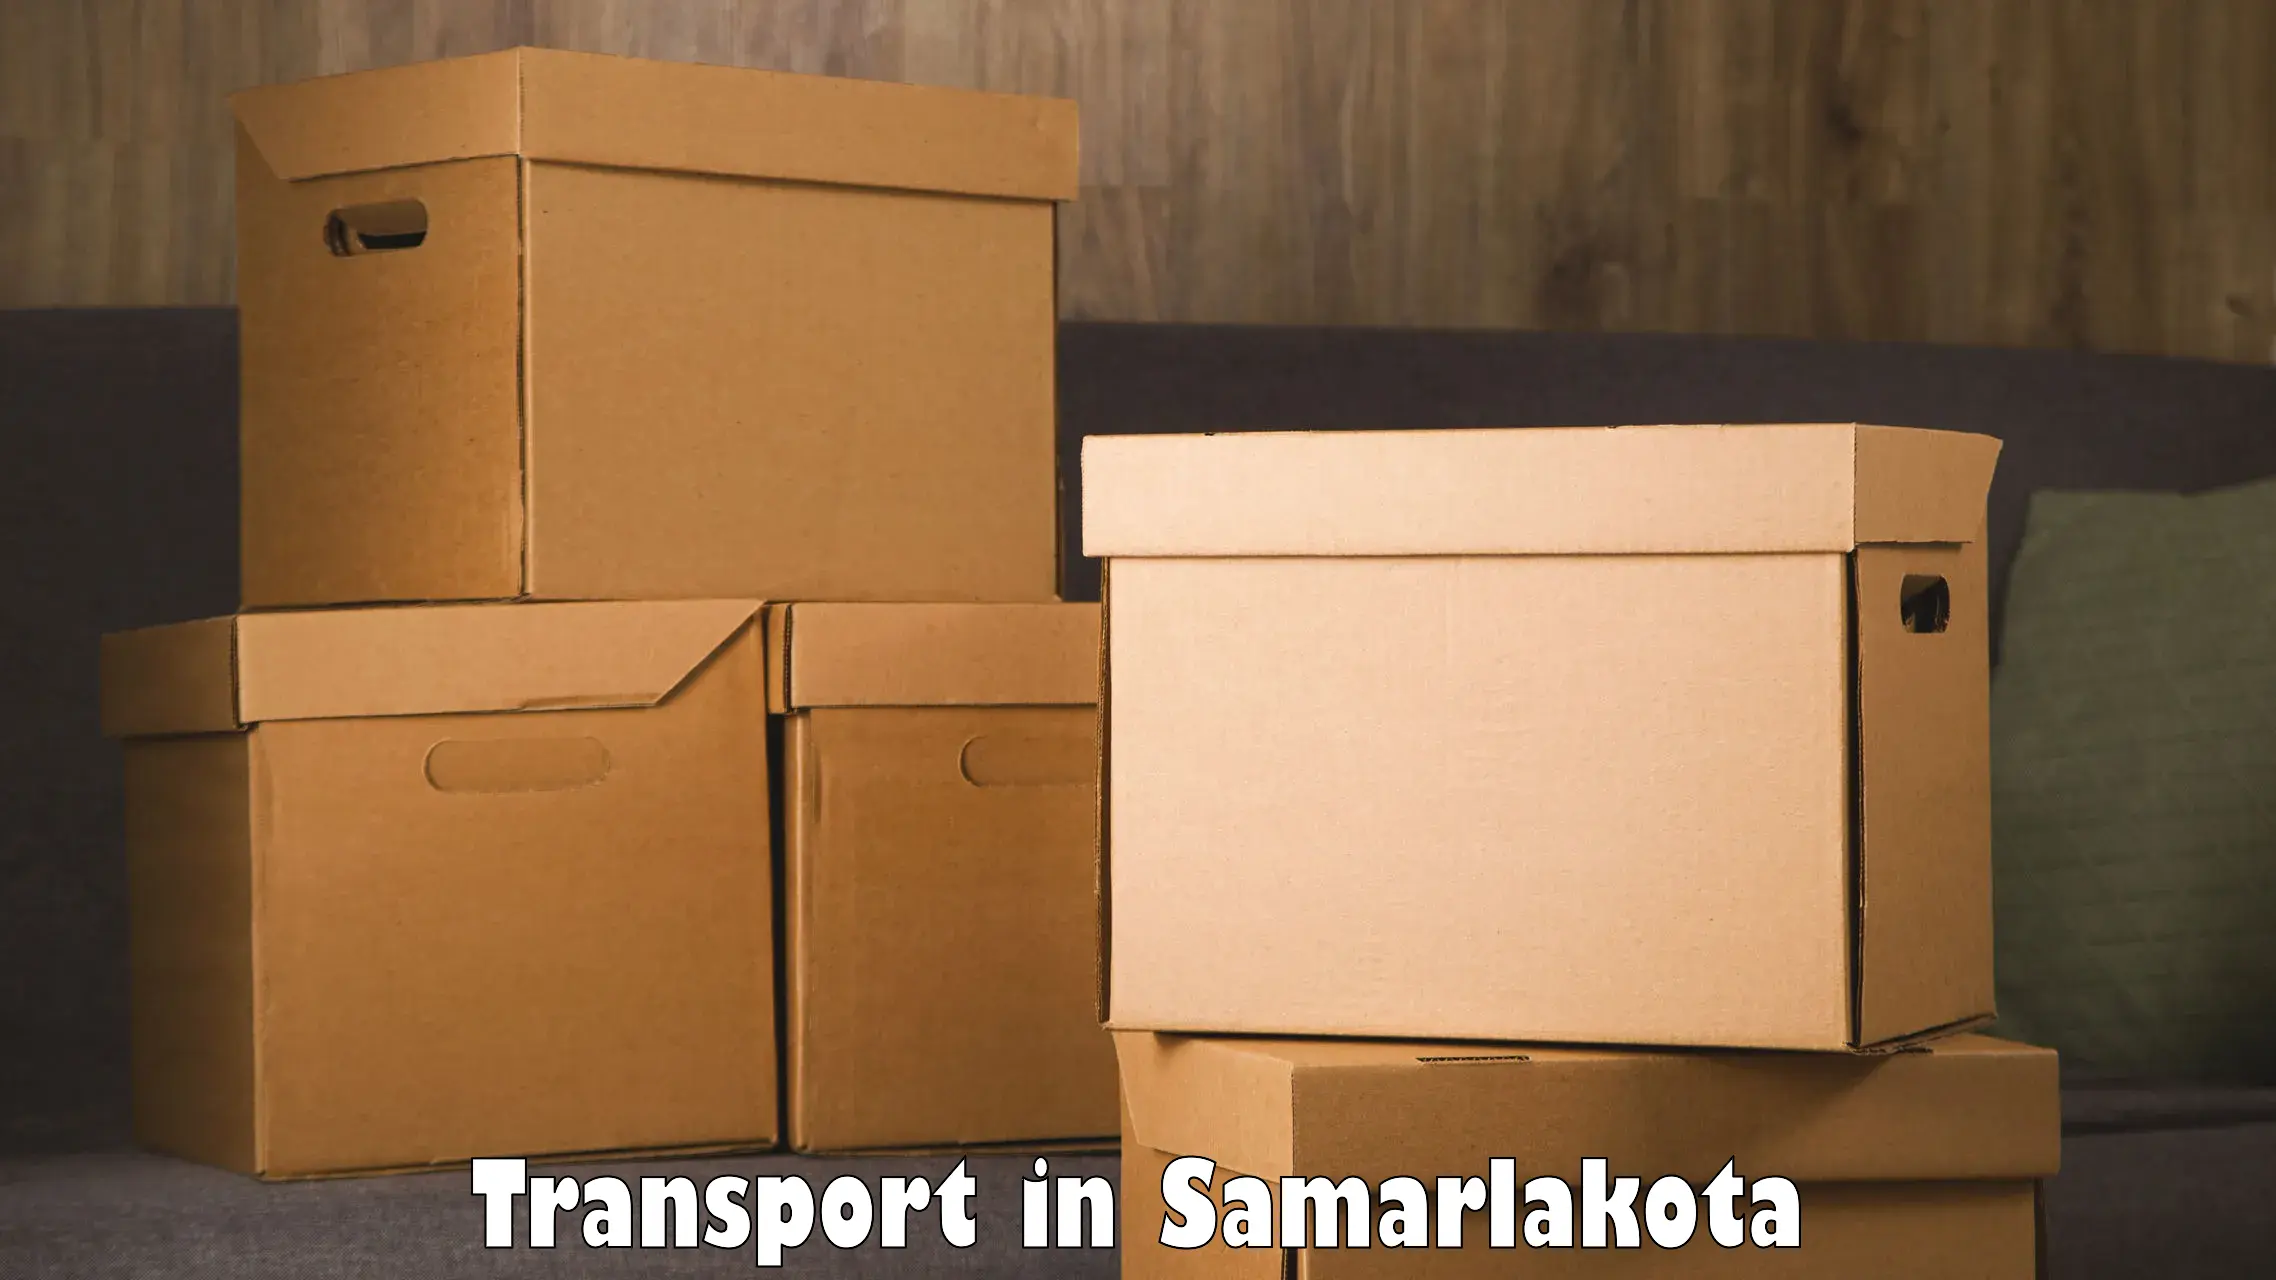 Parcel transport services in Samarlakota